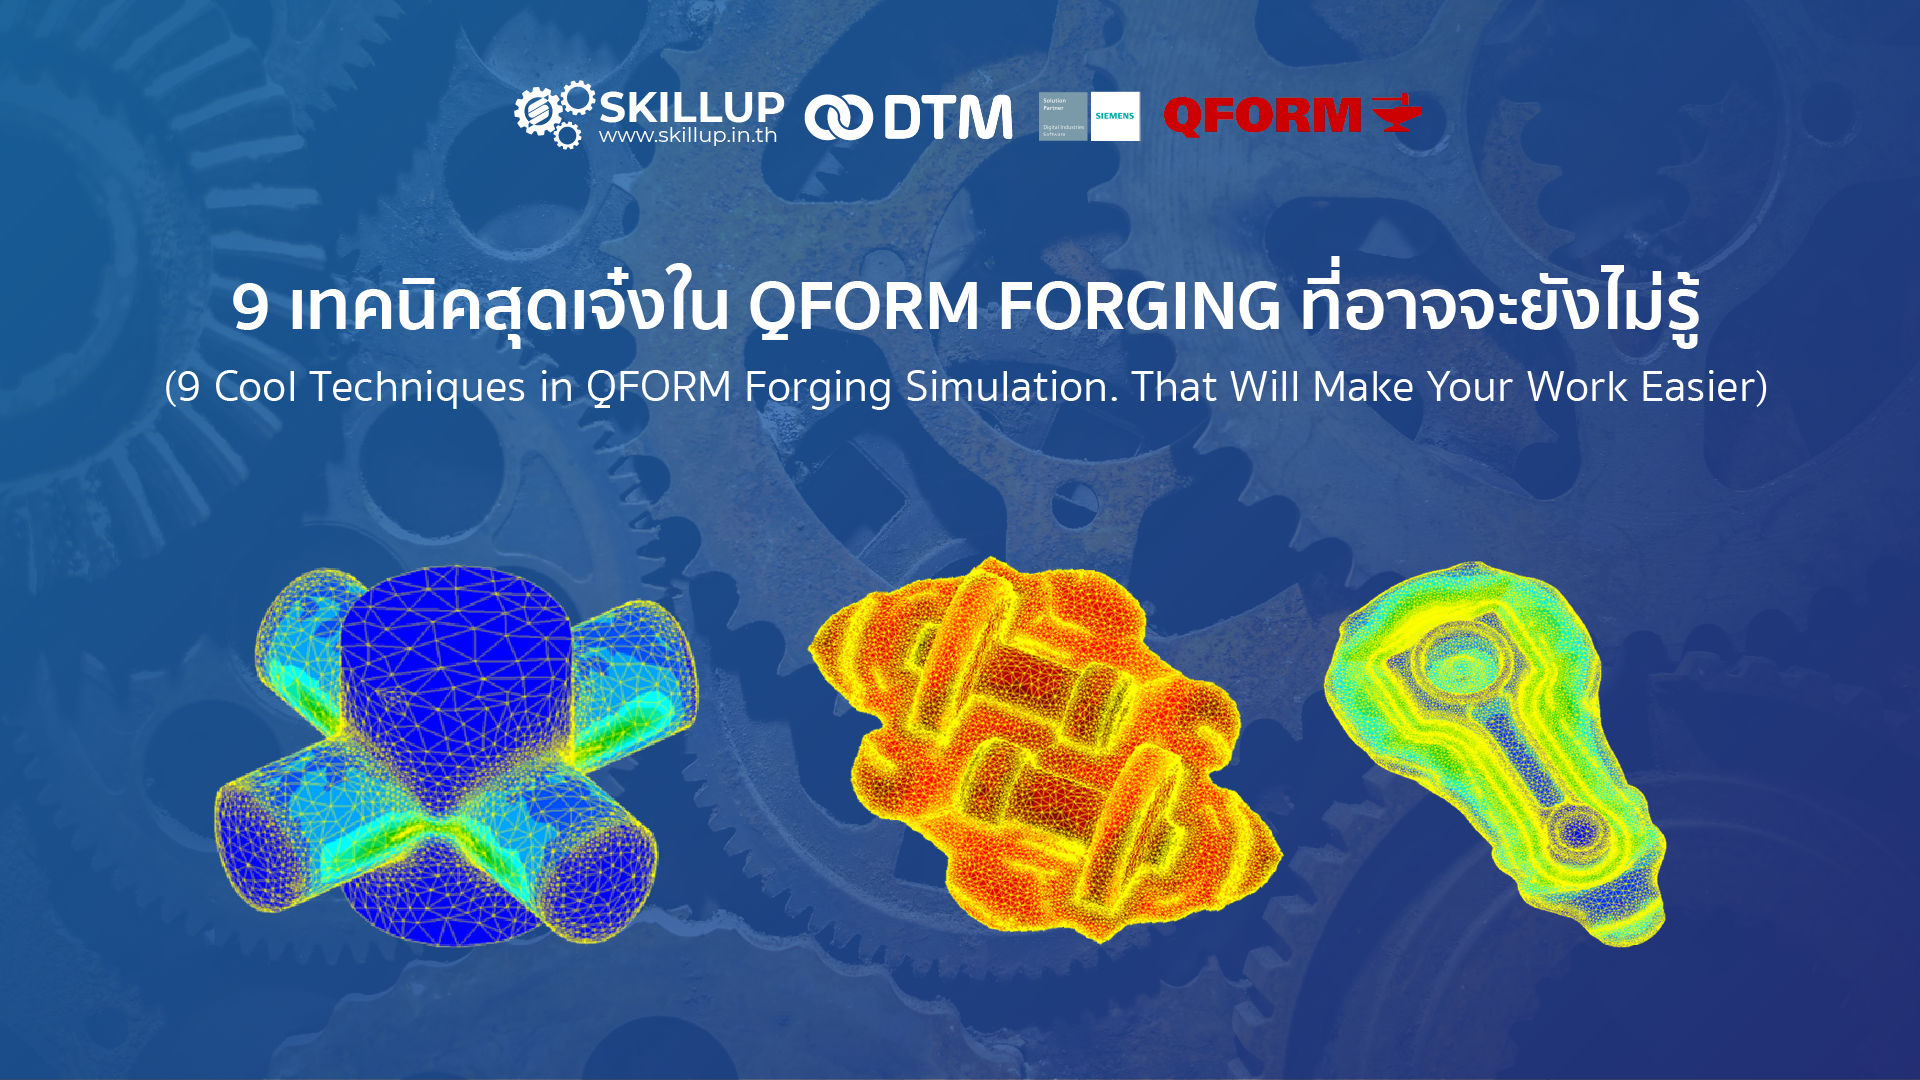 9 เทคนิคสุดเจ๋งใน QFORM Forging ที่อาจจะยังไม่รู้ (9 Cool Techniques in QFORM Forging Simulation. That Will Make Your Work Easier)